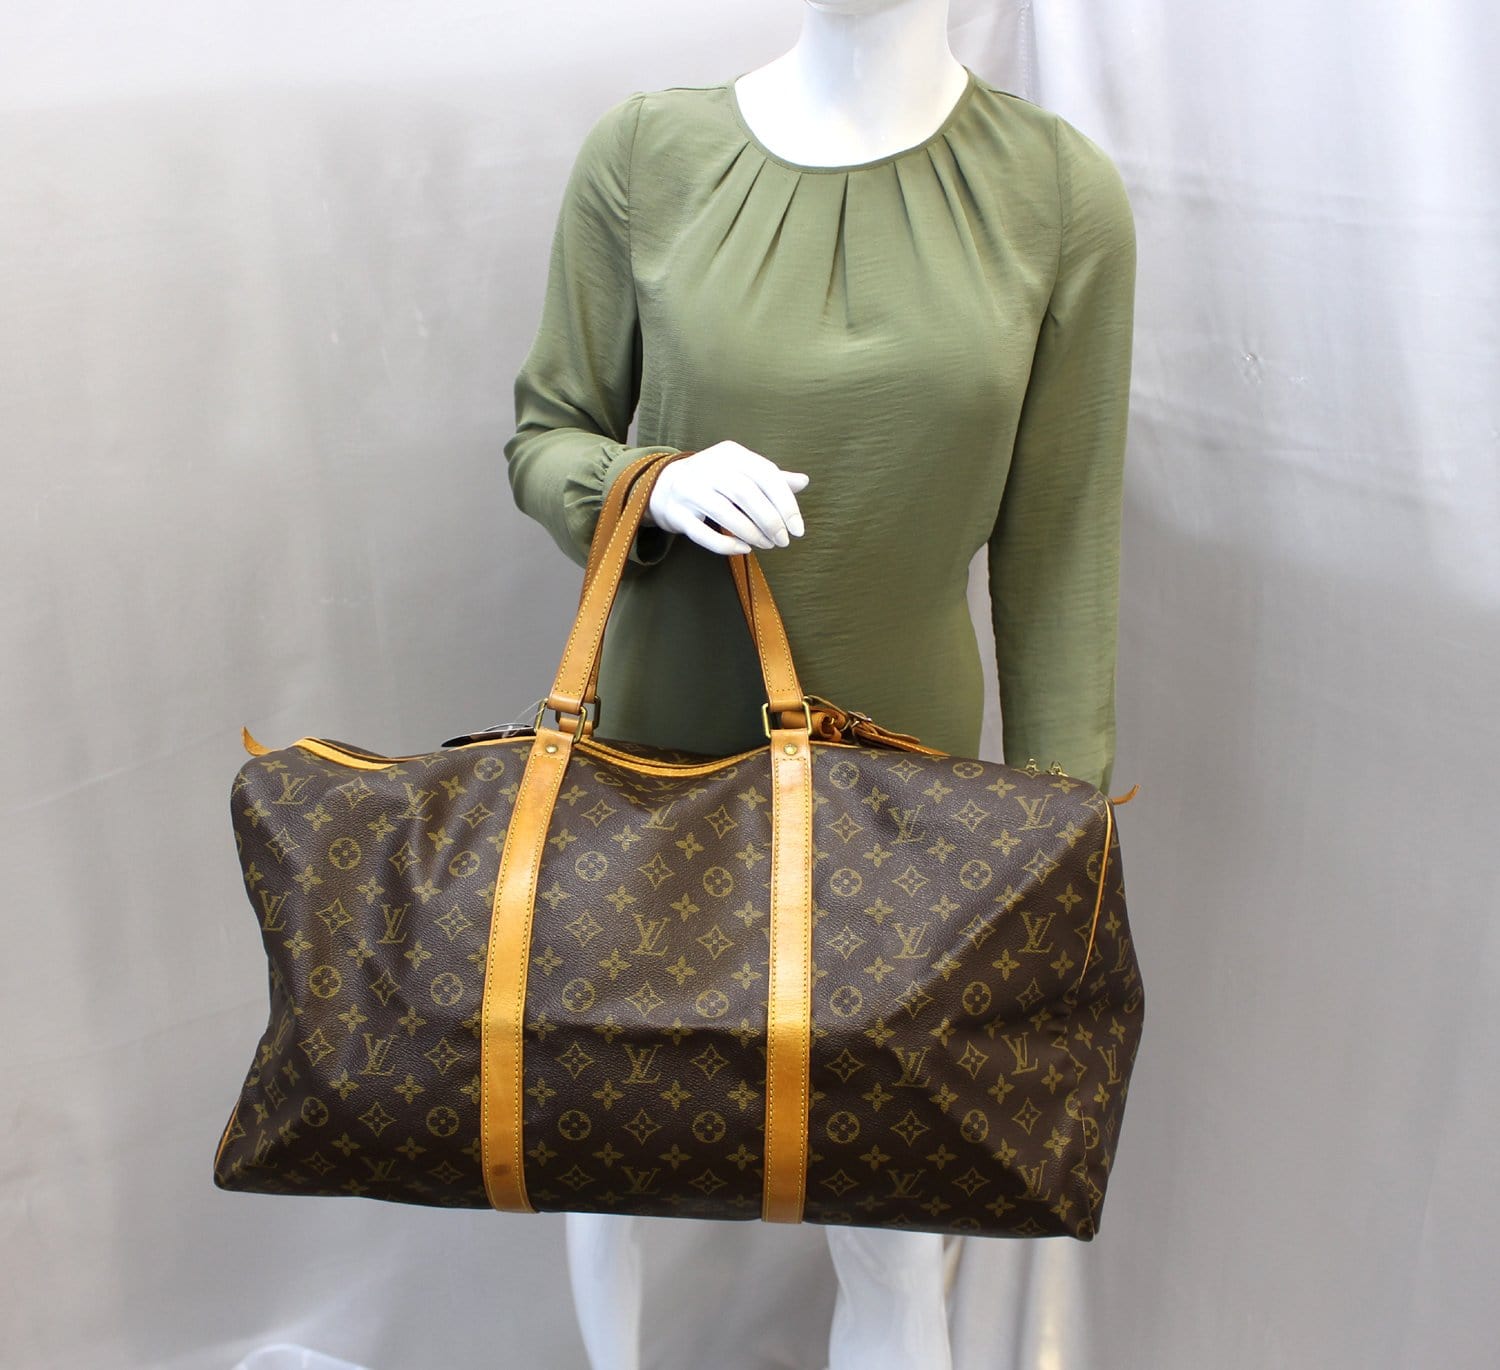 RARE Authentic Louis Vuitton monogram Sac Souple 55 Travel Bag Carry On